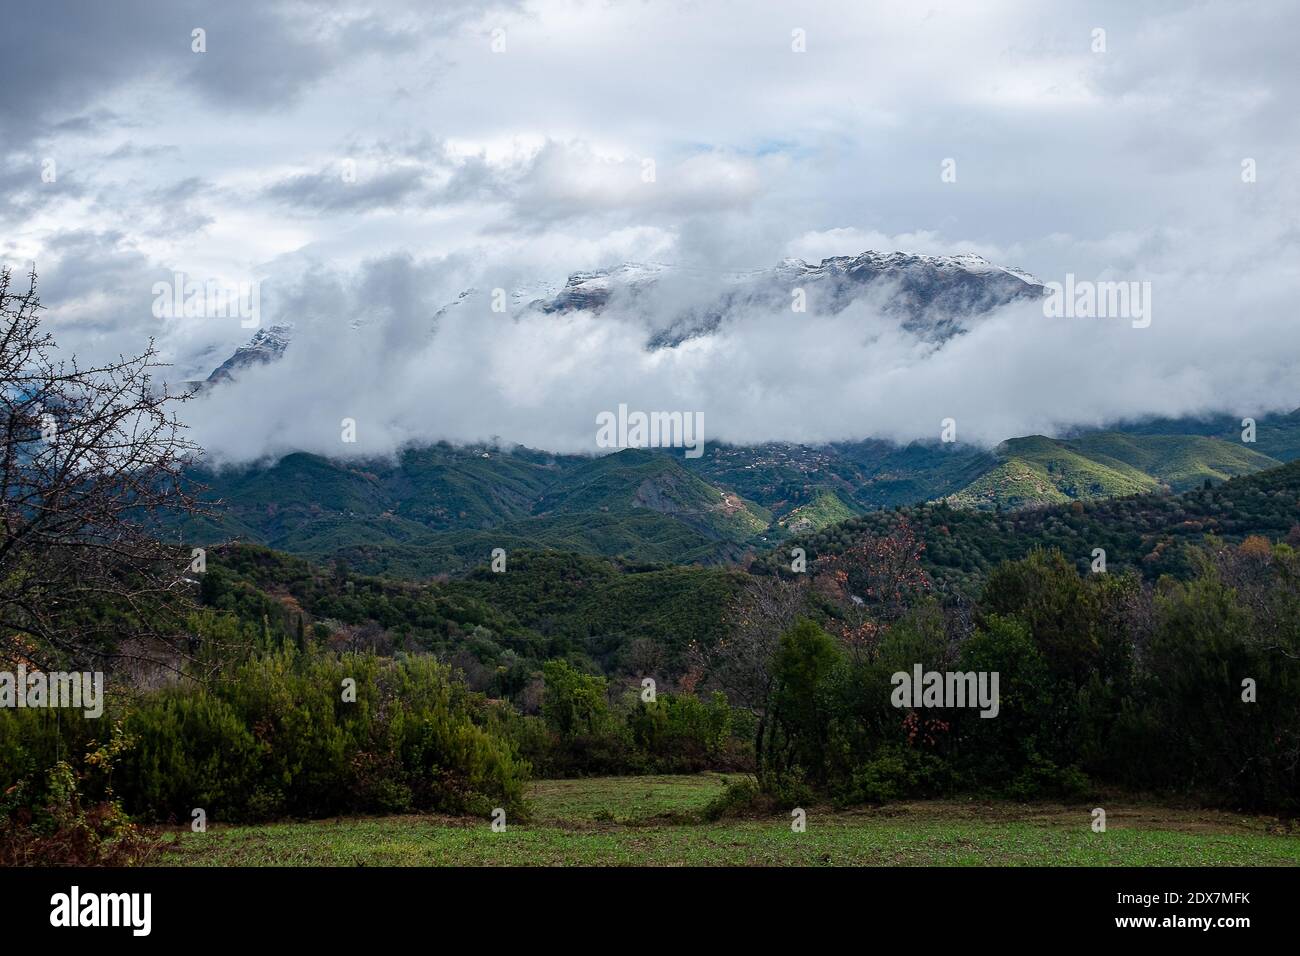 Tzoumerka, Epirus, Greece - December 15, 2017: An autumn cloudy day on the mountain Stock Photo